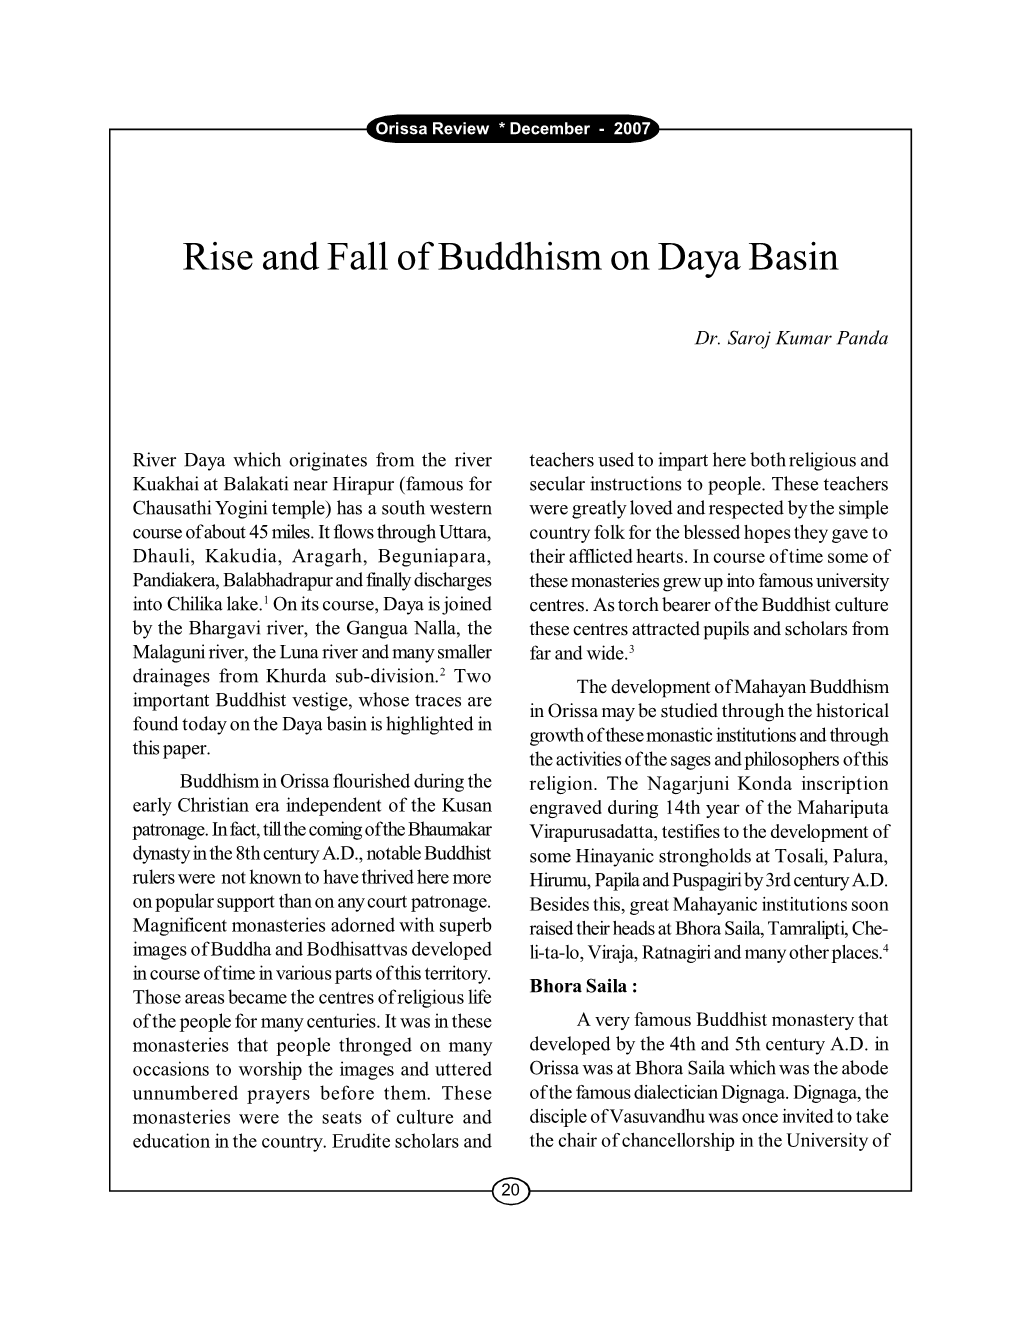 Rise and Fall of Buddhism on Daya Basin